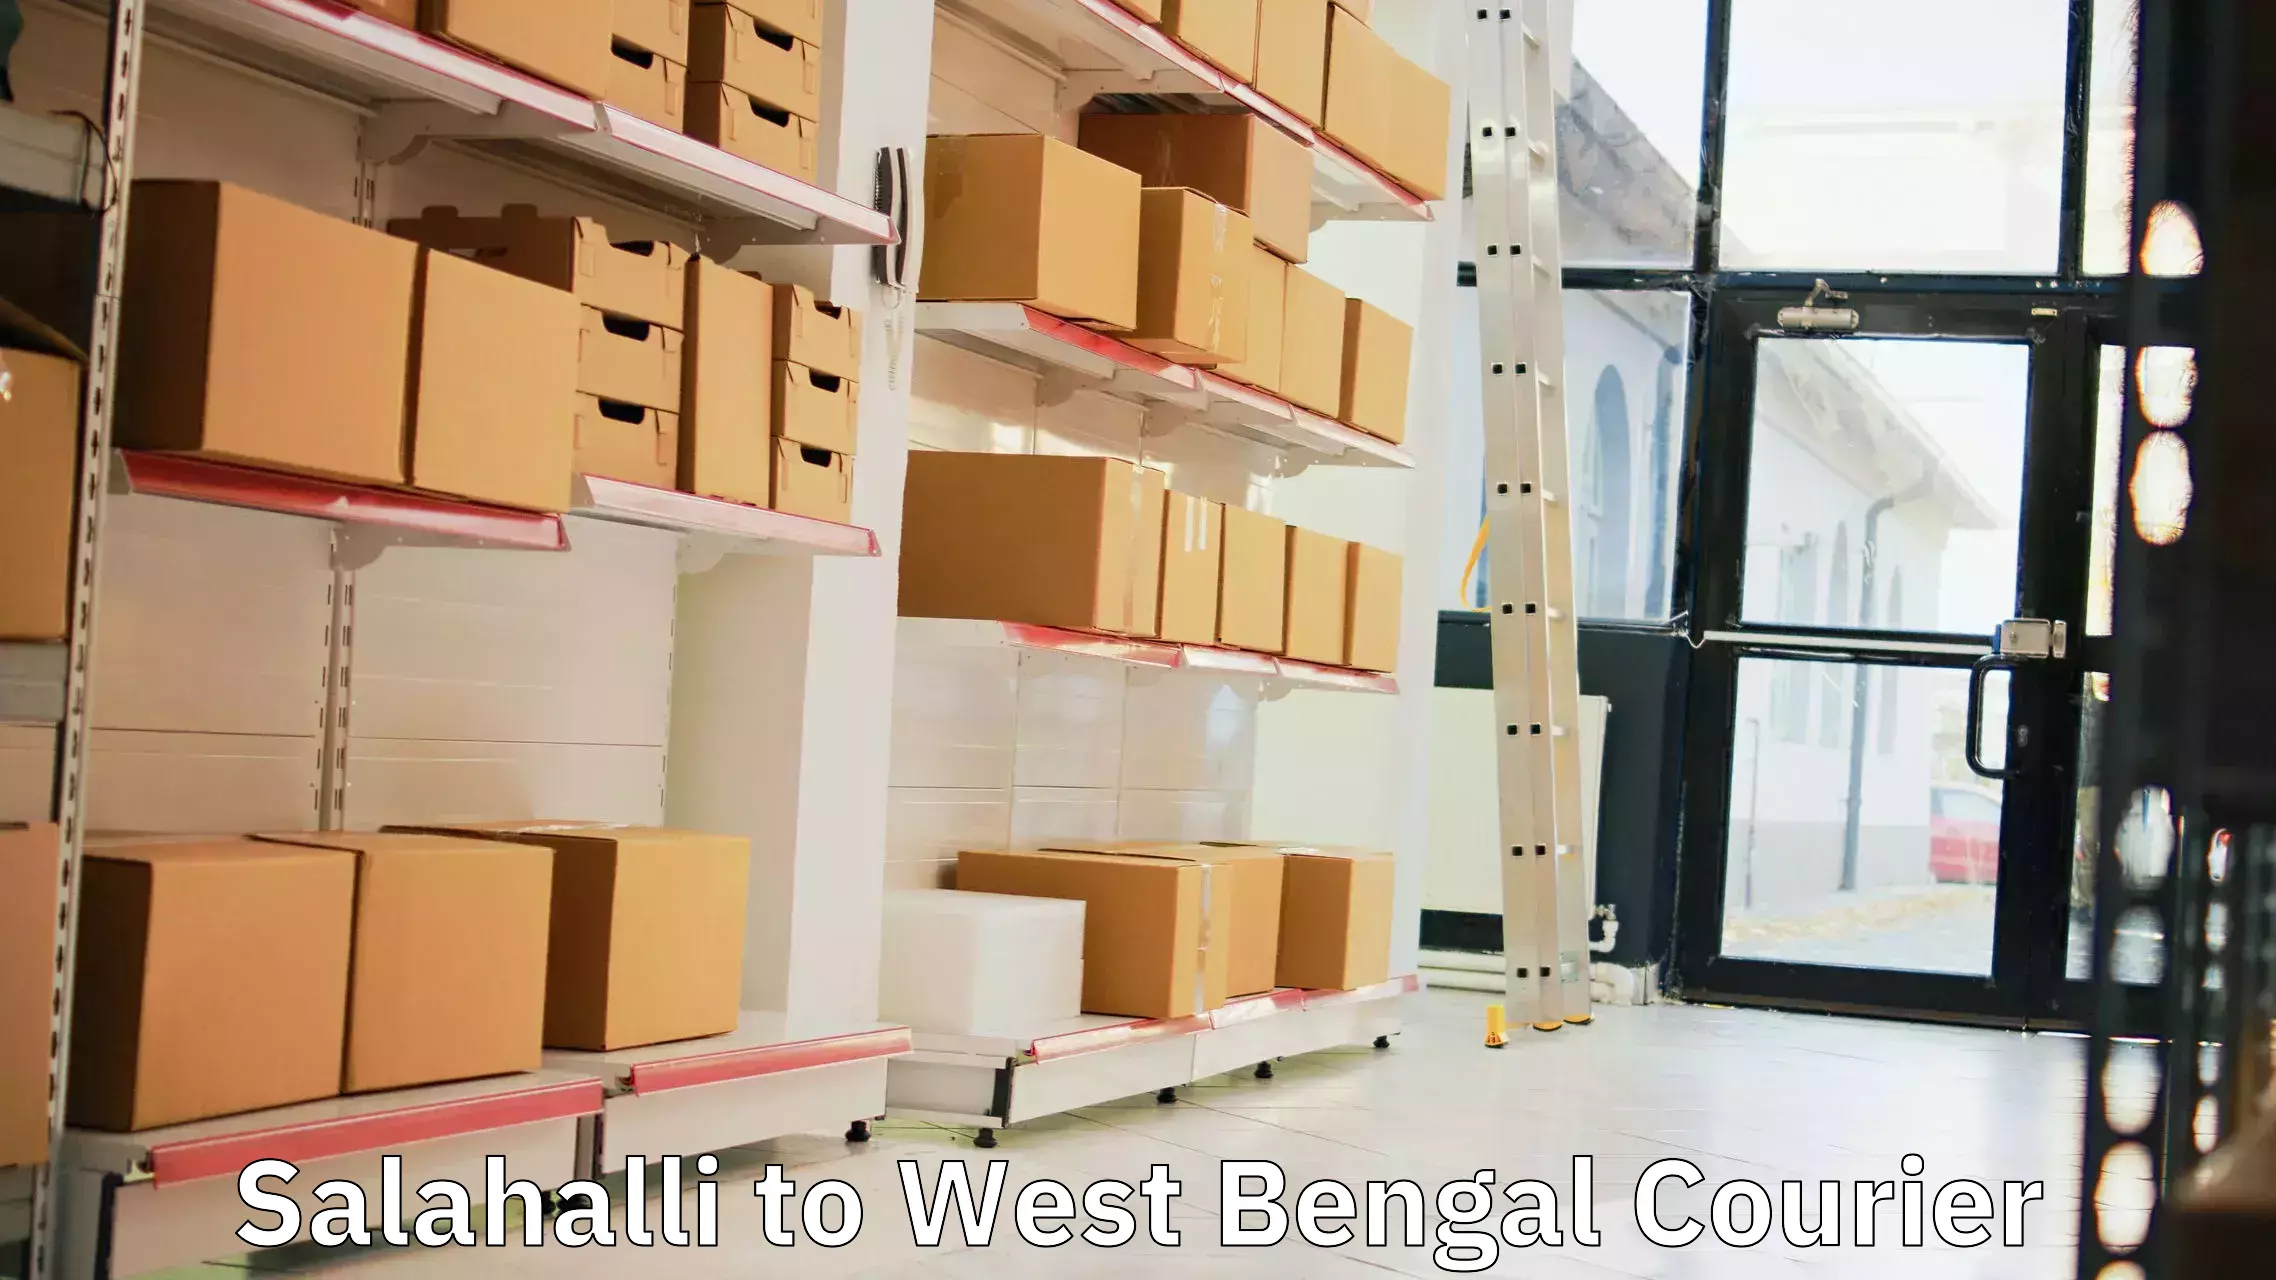 High-capacity parcel service Salahalli to Swarupnagar